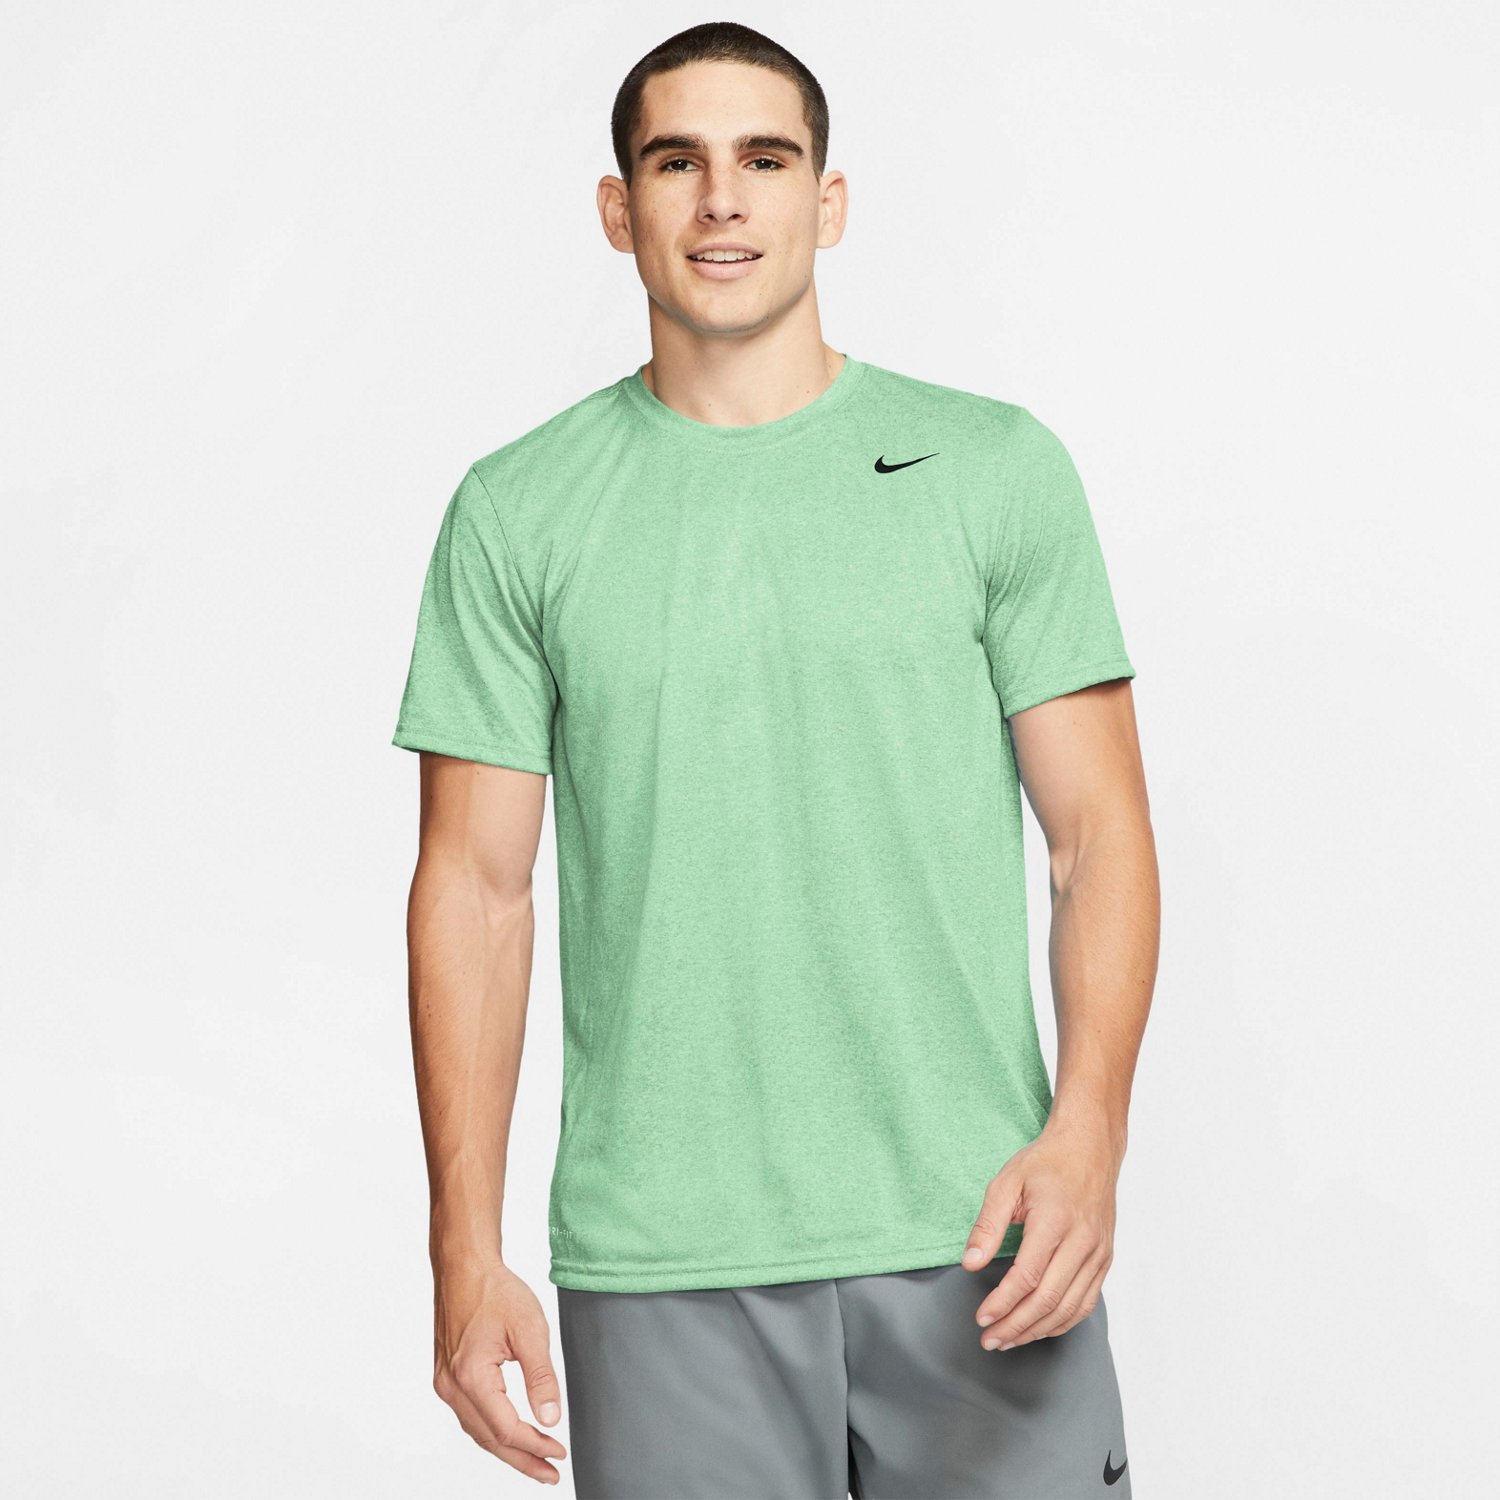 nike athlete t shirt green